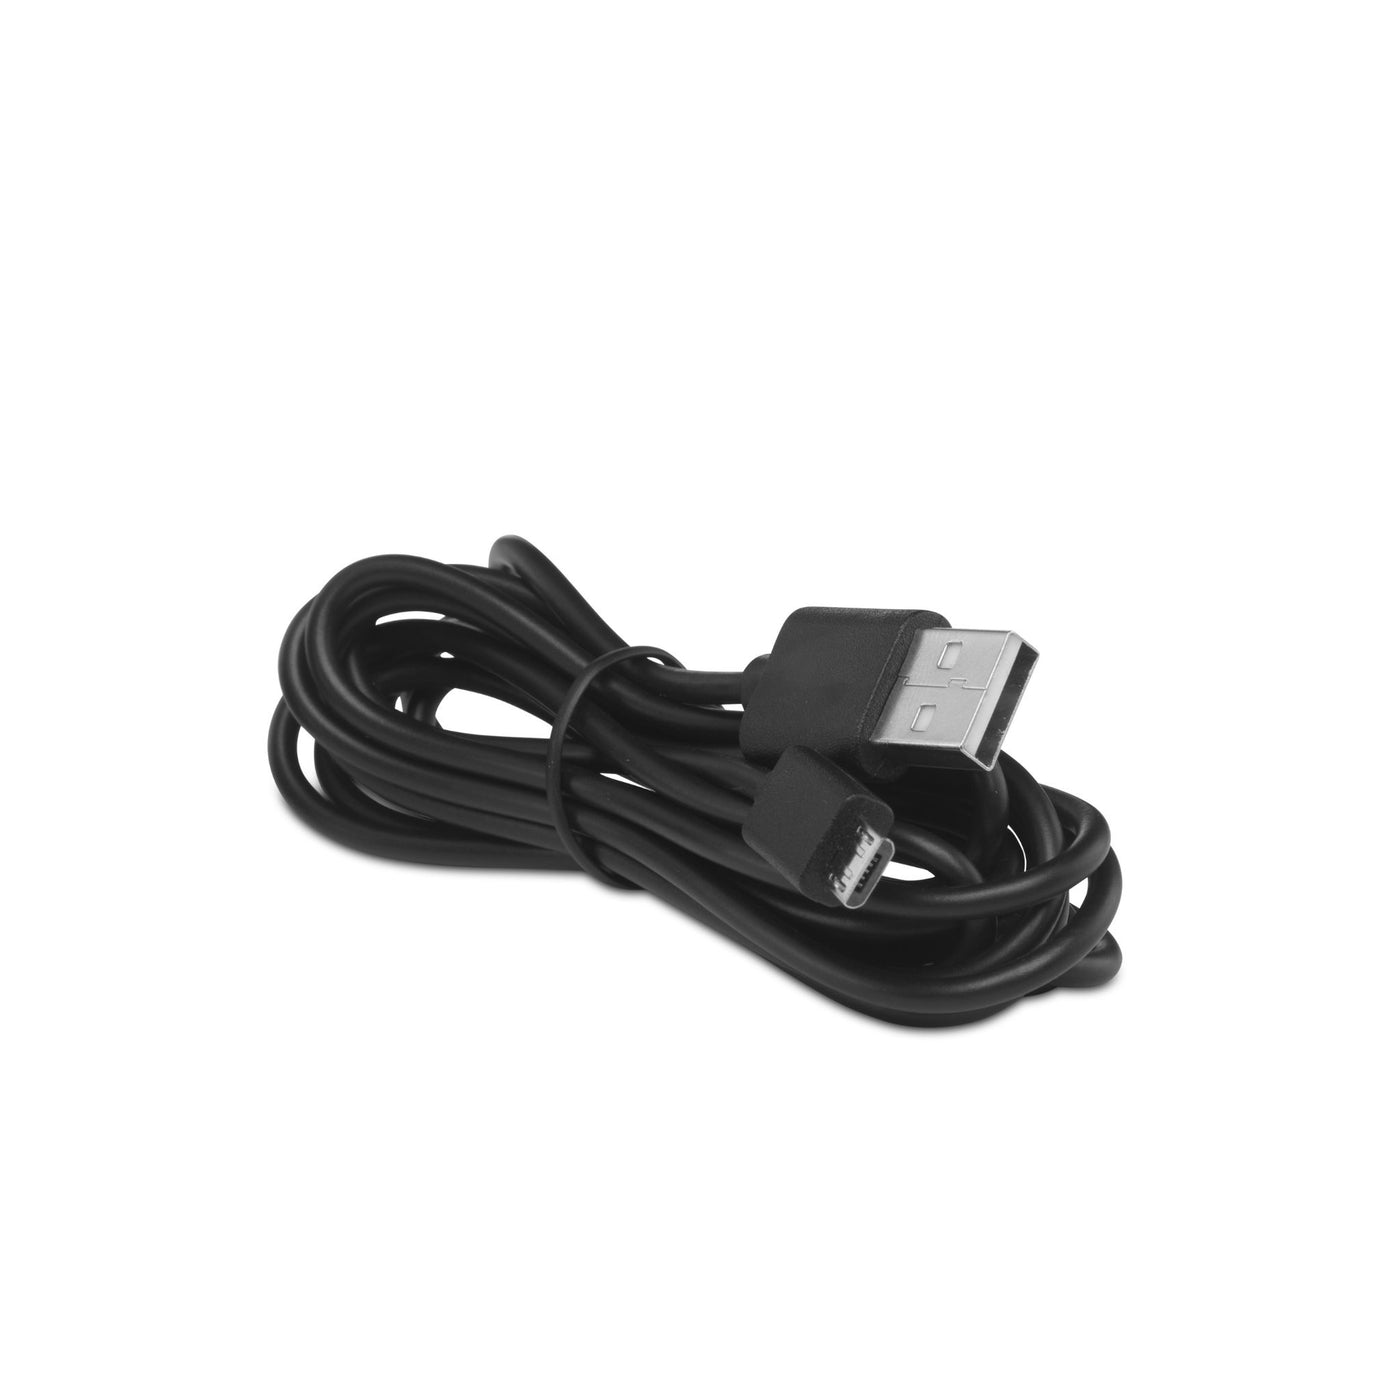 P003585 - USB zu Micro-USB Kabel schwarz SMARTBABY5BK